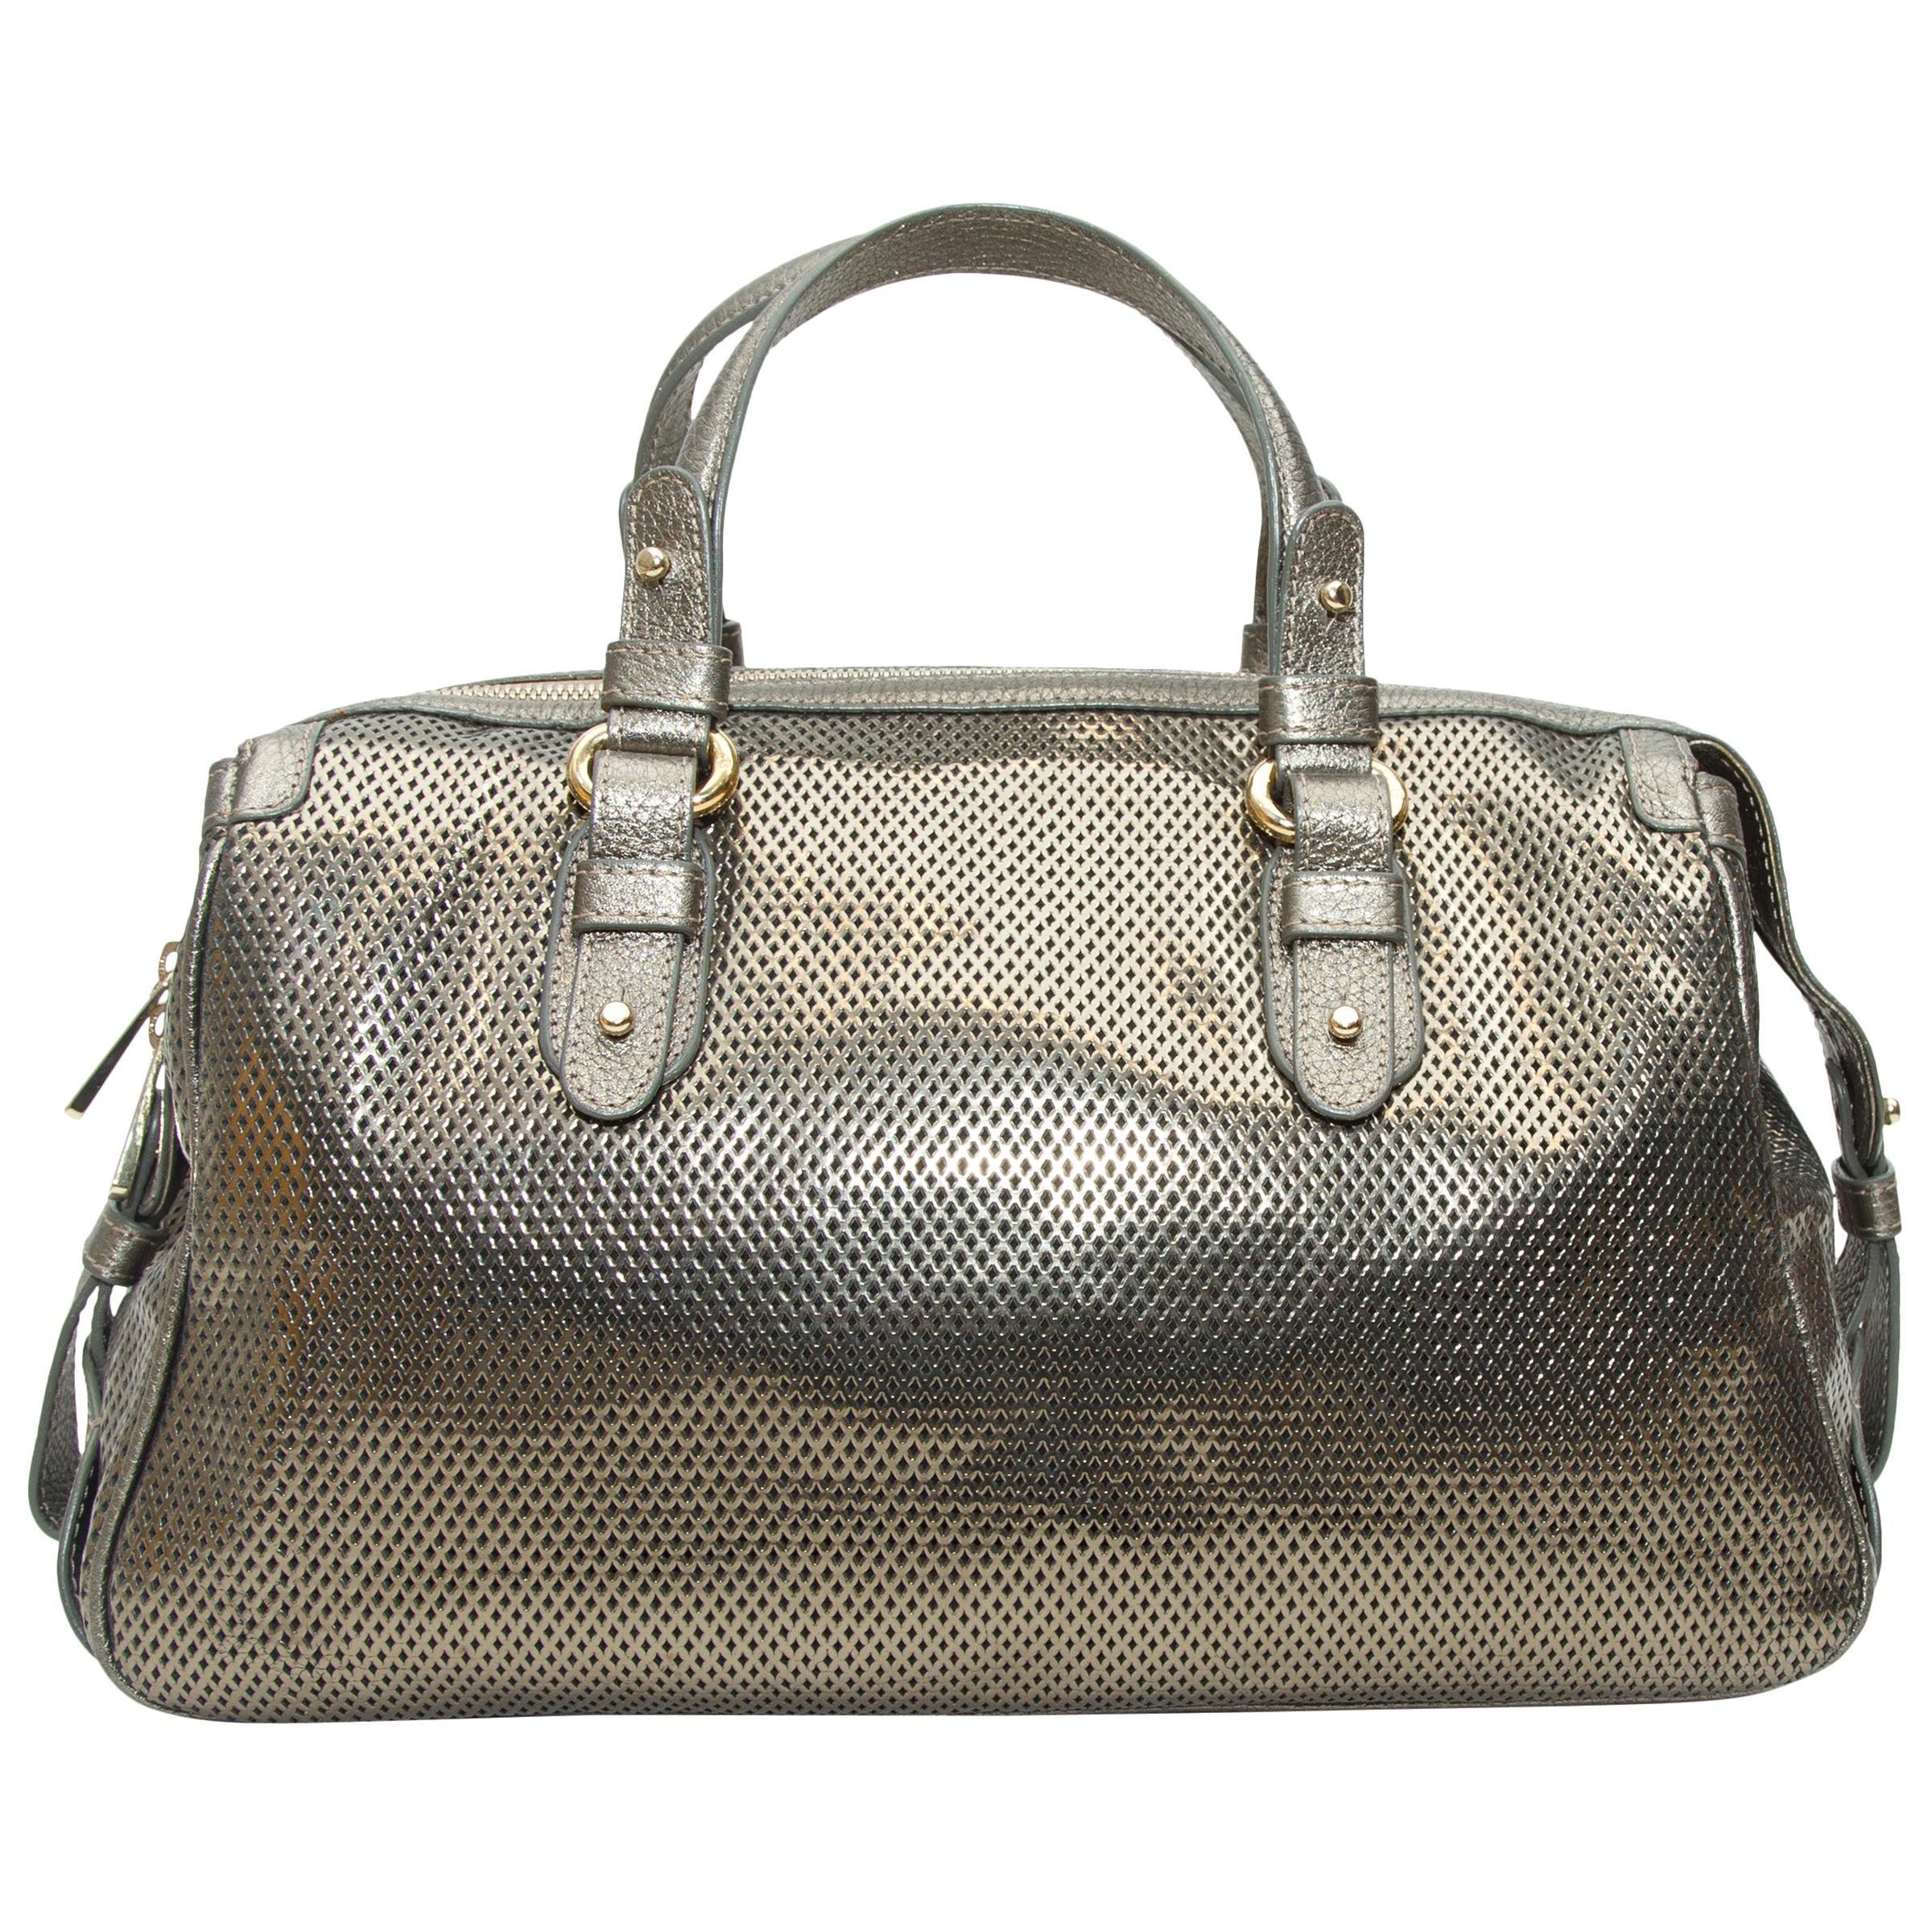 Giorgio Armani Silver Perforated Leather Handbag